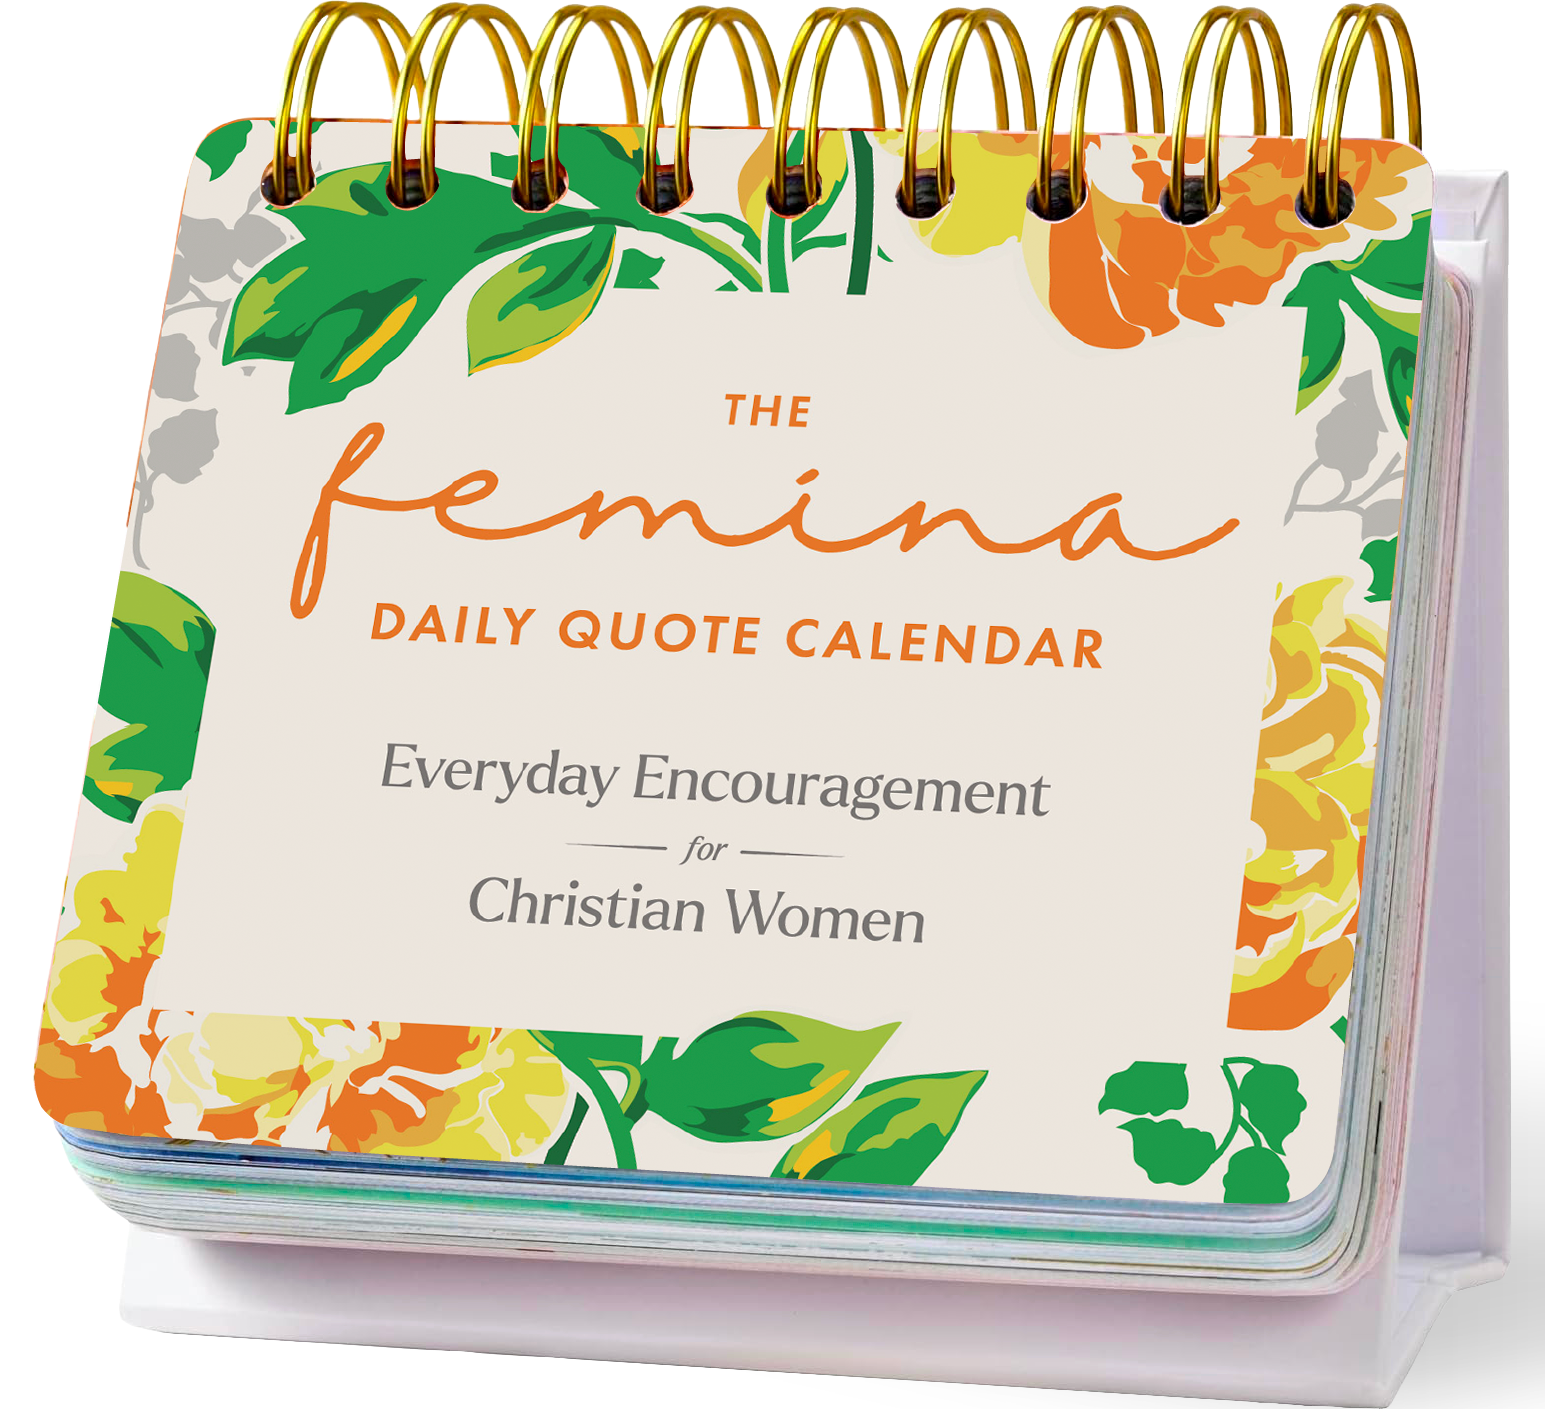 The Femina Daily Quote Calendar